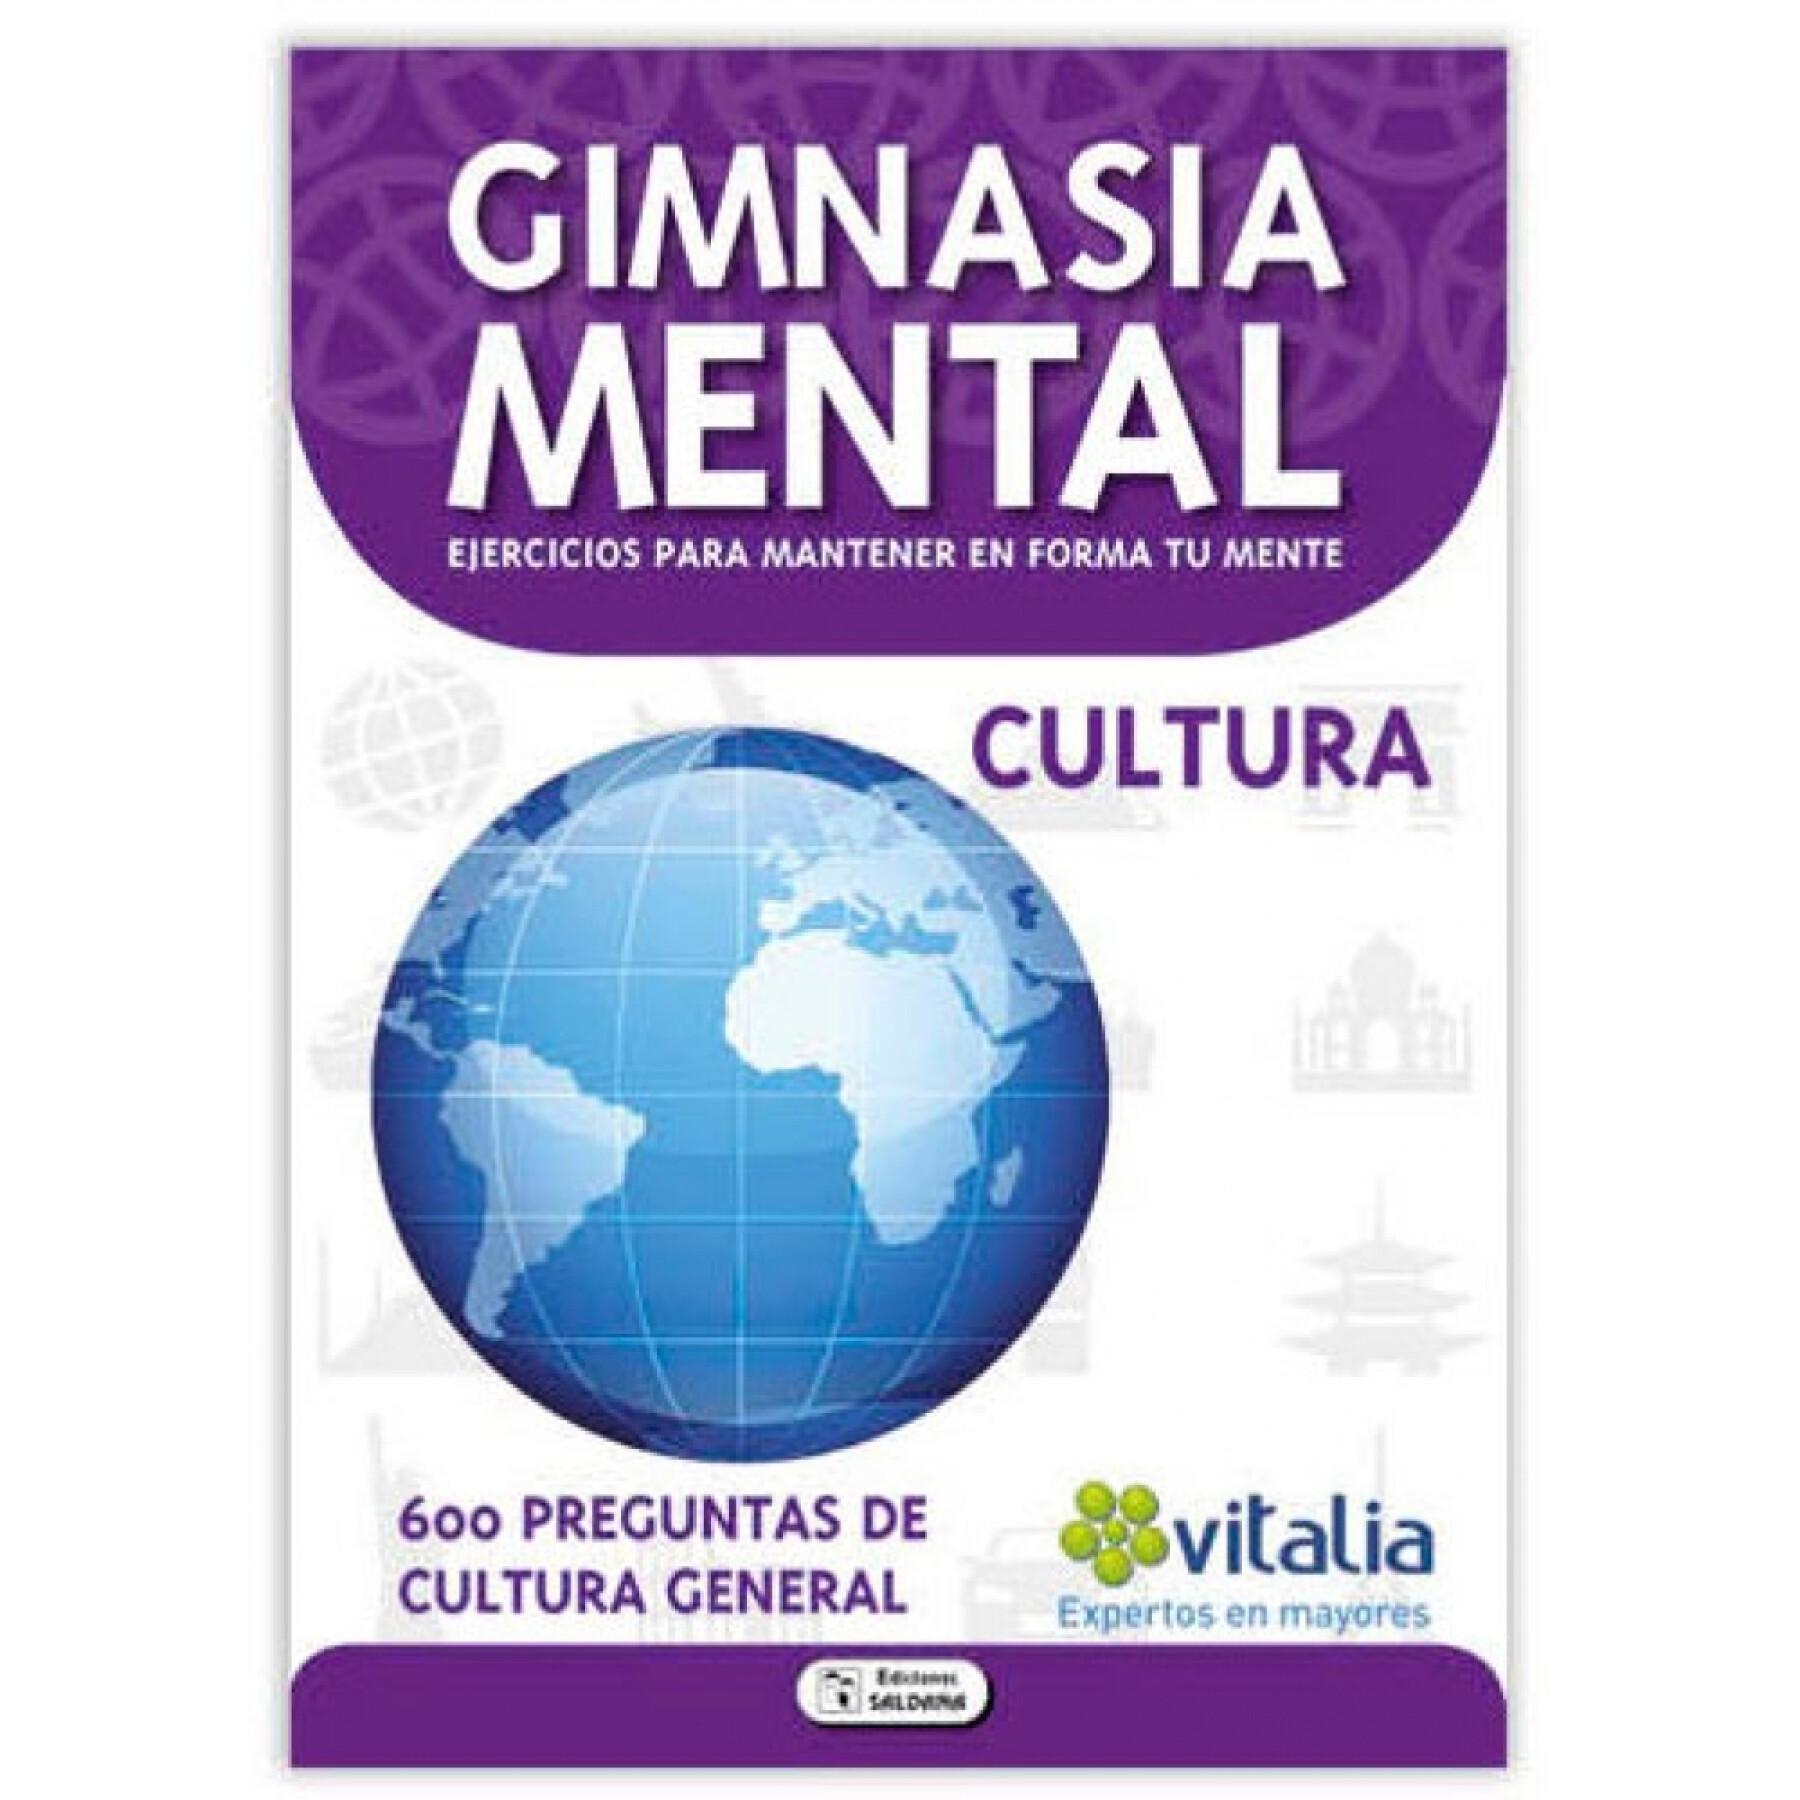 Book 80 pages mental gymnastics 8 models Ediciones Saldaña